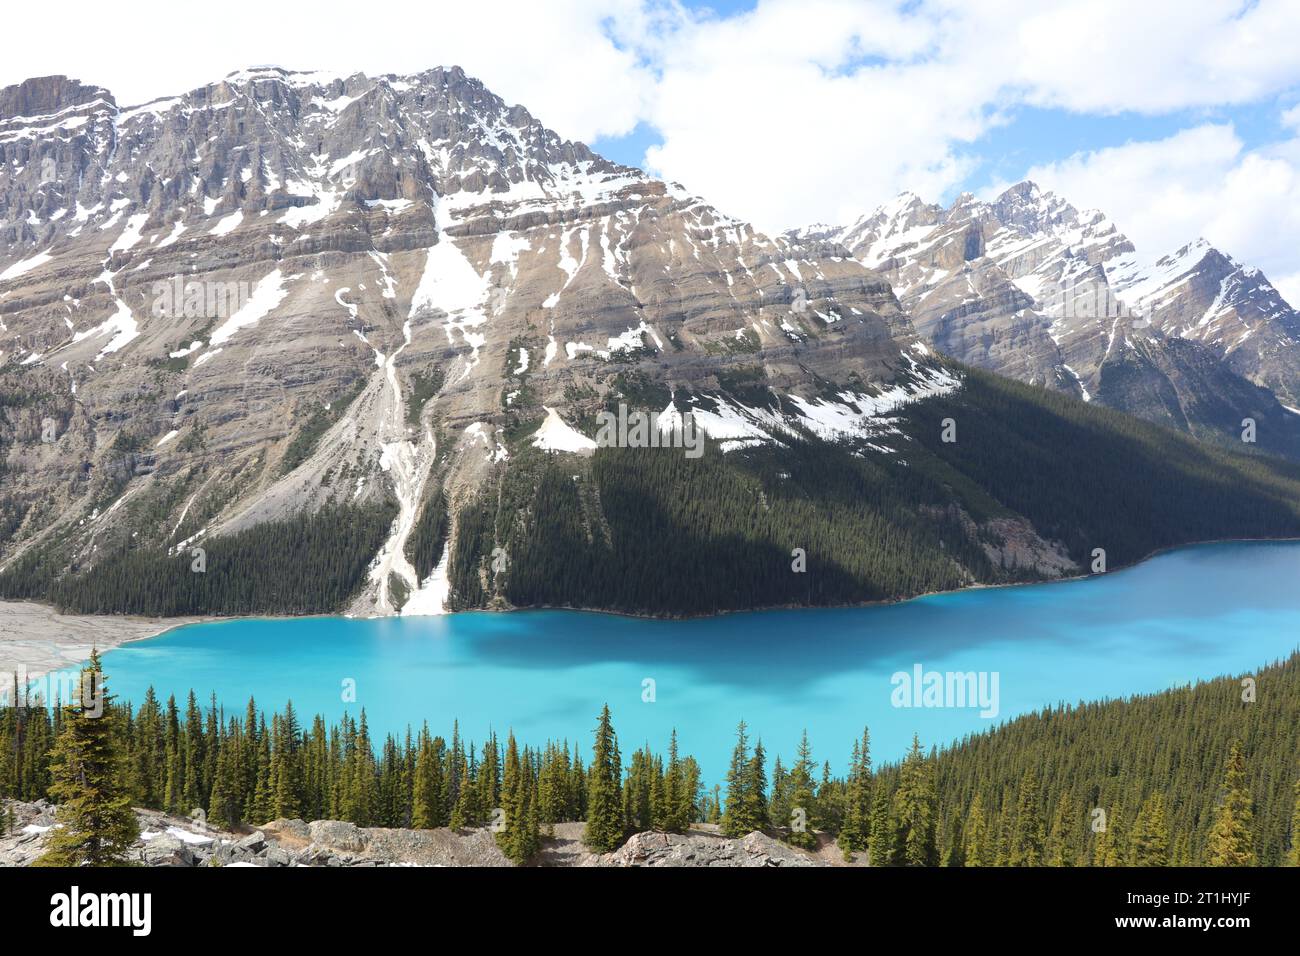 Der Peyto Lake ist ein von Gletschern gespeister See im Banff National Park in den Kanadischen Rocky Mountains. Der See selbst befindet sich in der Nähe des Icefields Parkway. Stockfoto